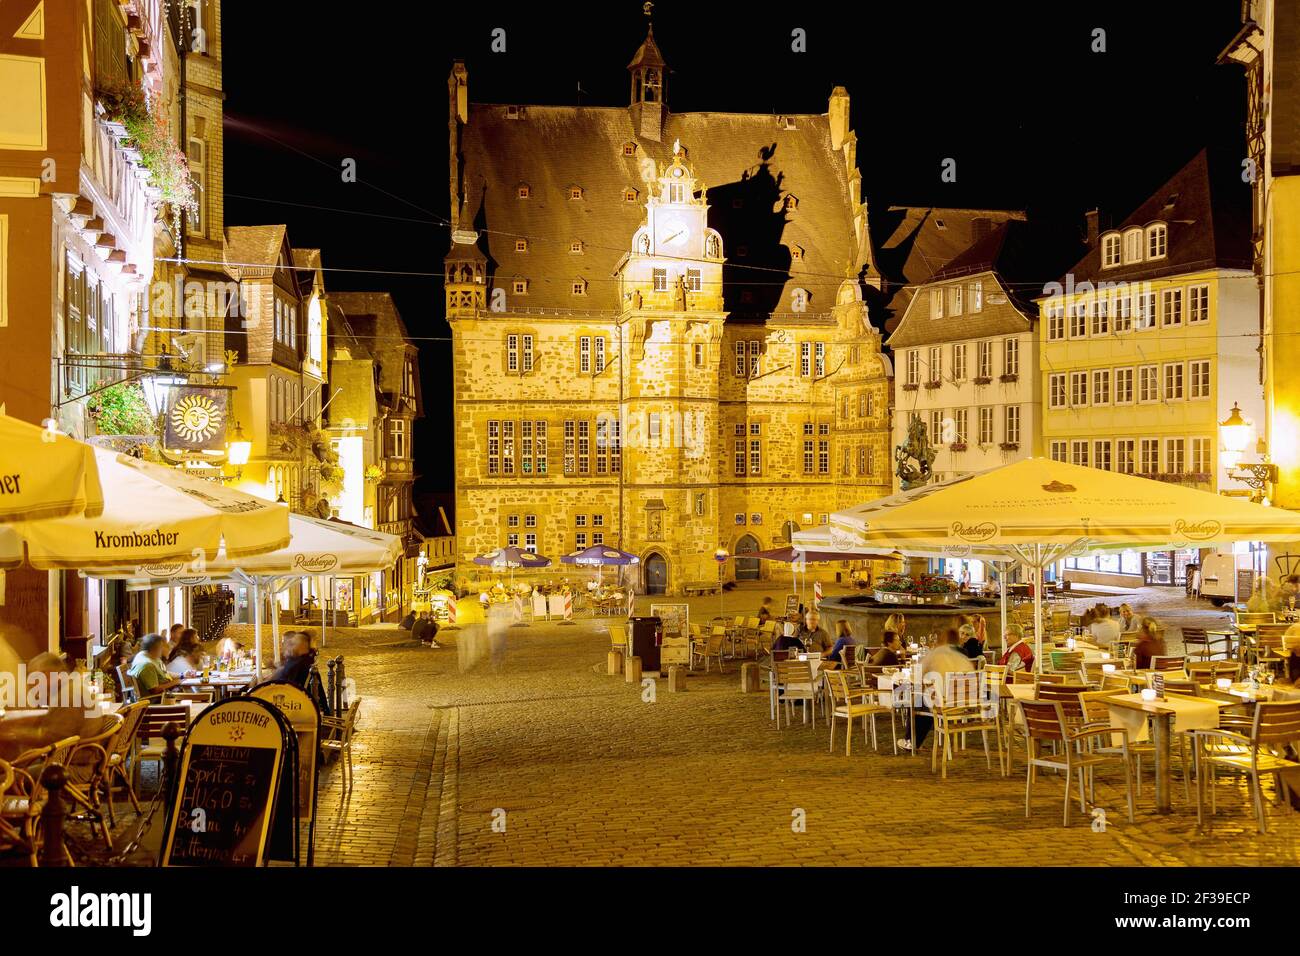 Geographie / Reisen, Deutschland, Hessen, Marburg, Marburg an der Lahn, Marktplatz, Rathaus, Café, Hotel, Additional-Rights-Clearance-Info-Not-Available Stockfoto